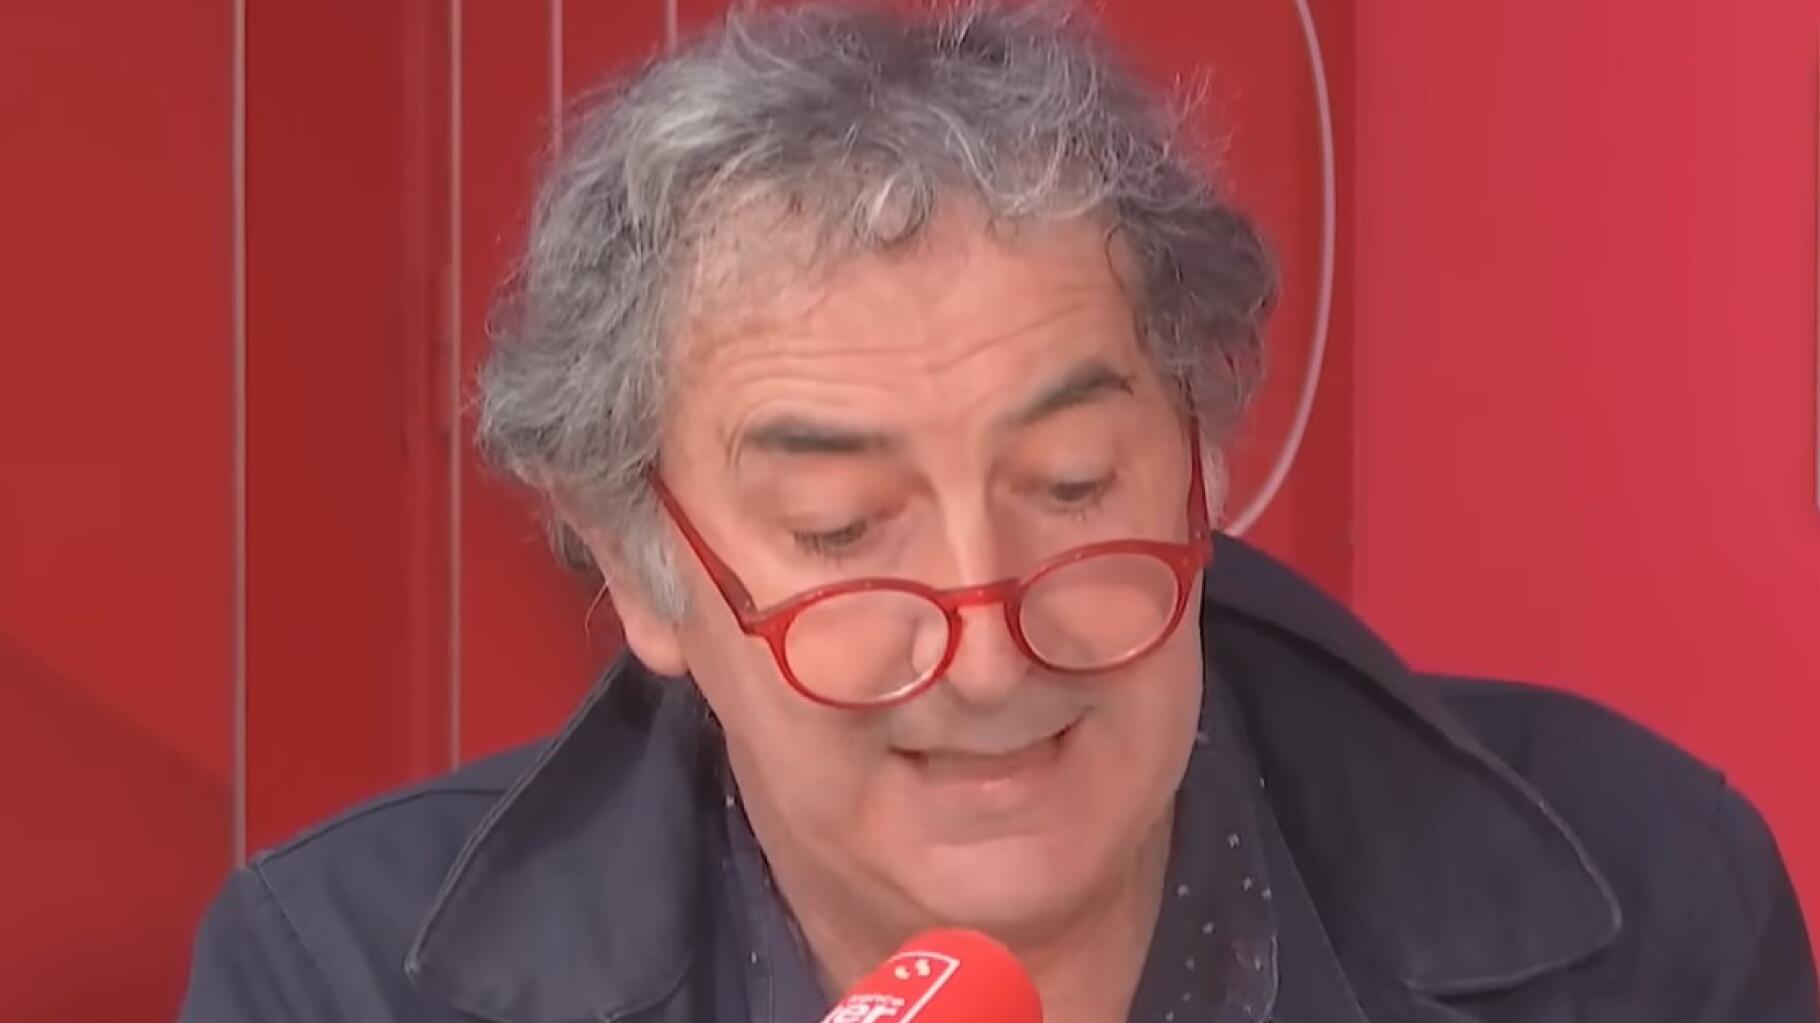 François Morel is “een beetje bezorgd” na de zaak van Guillaume Maurice